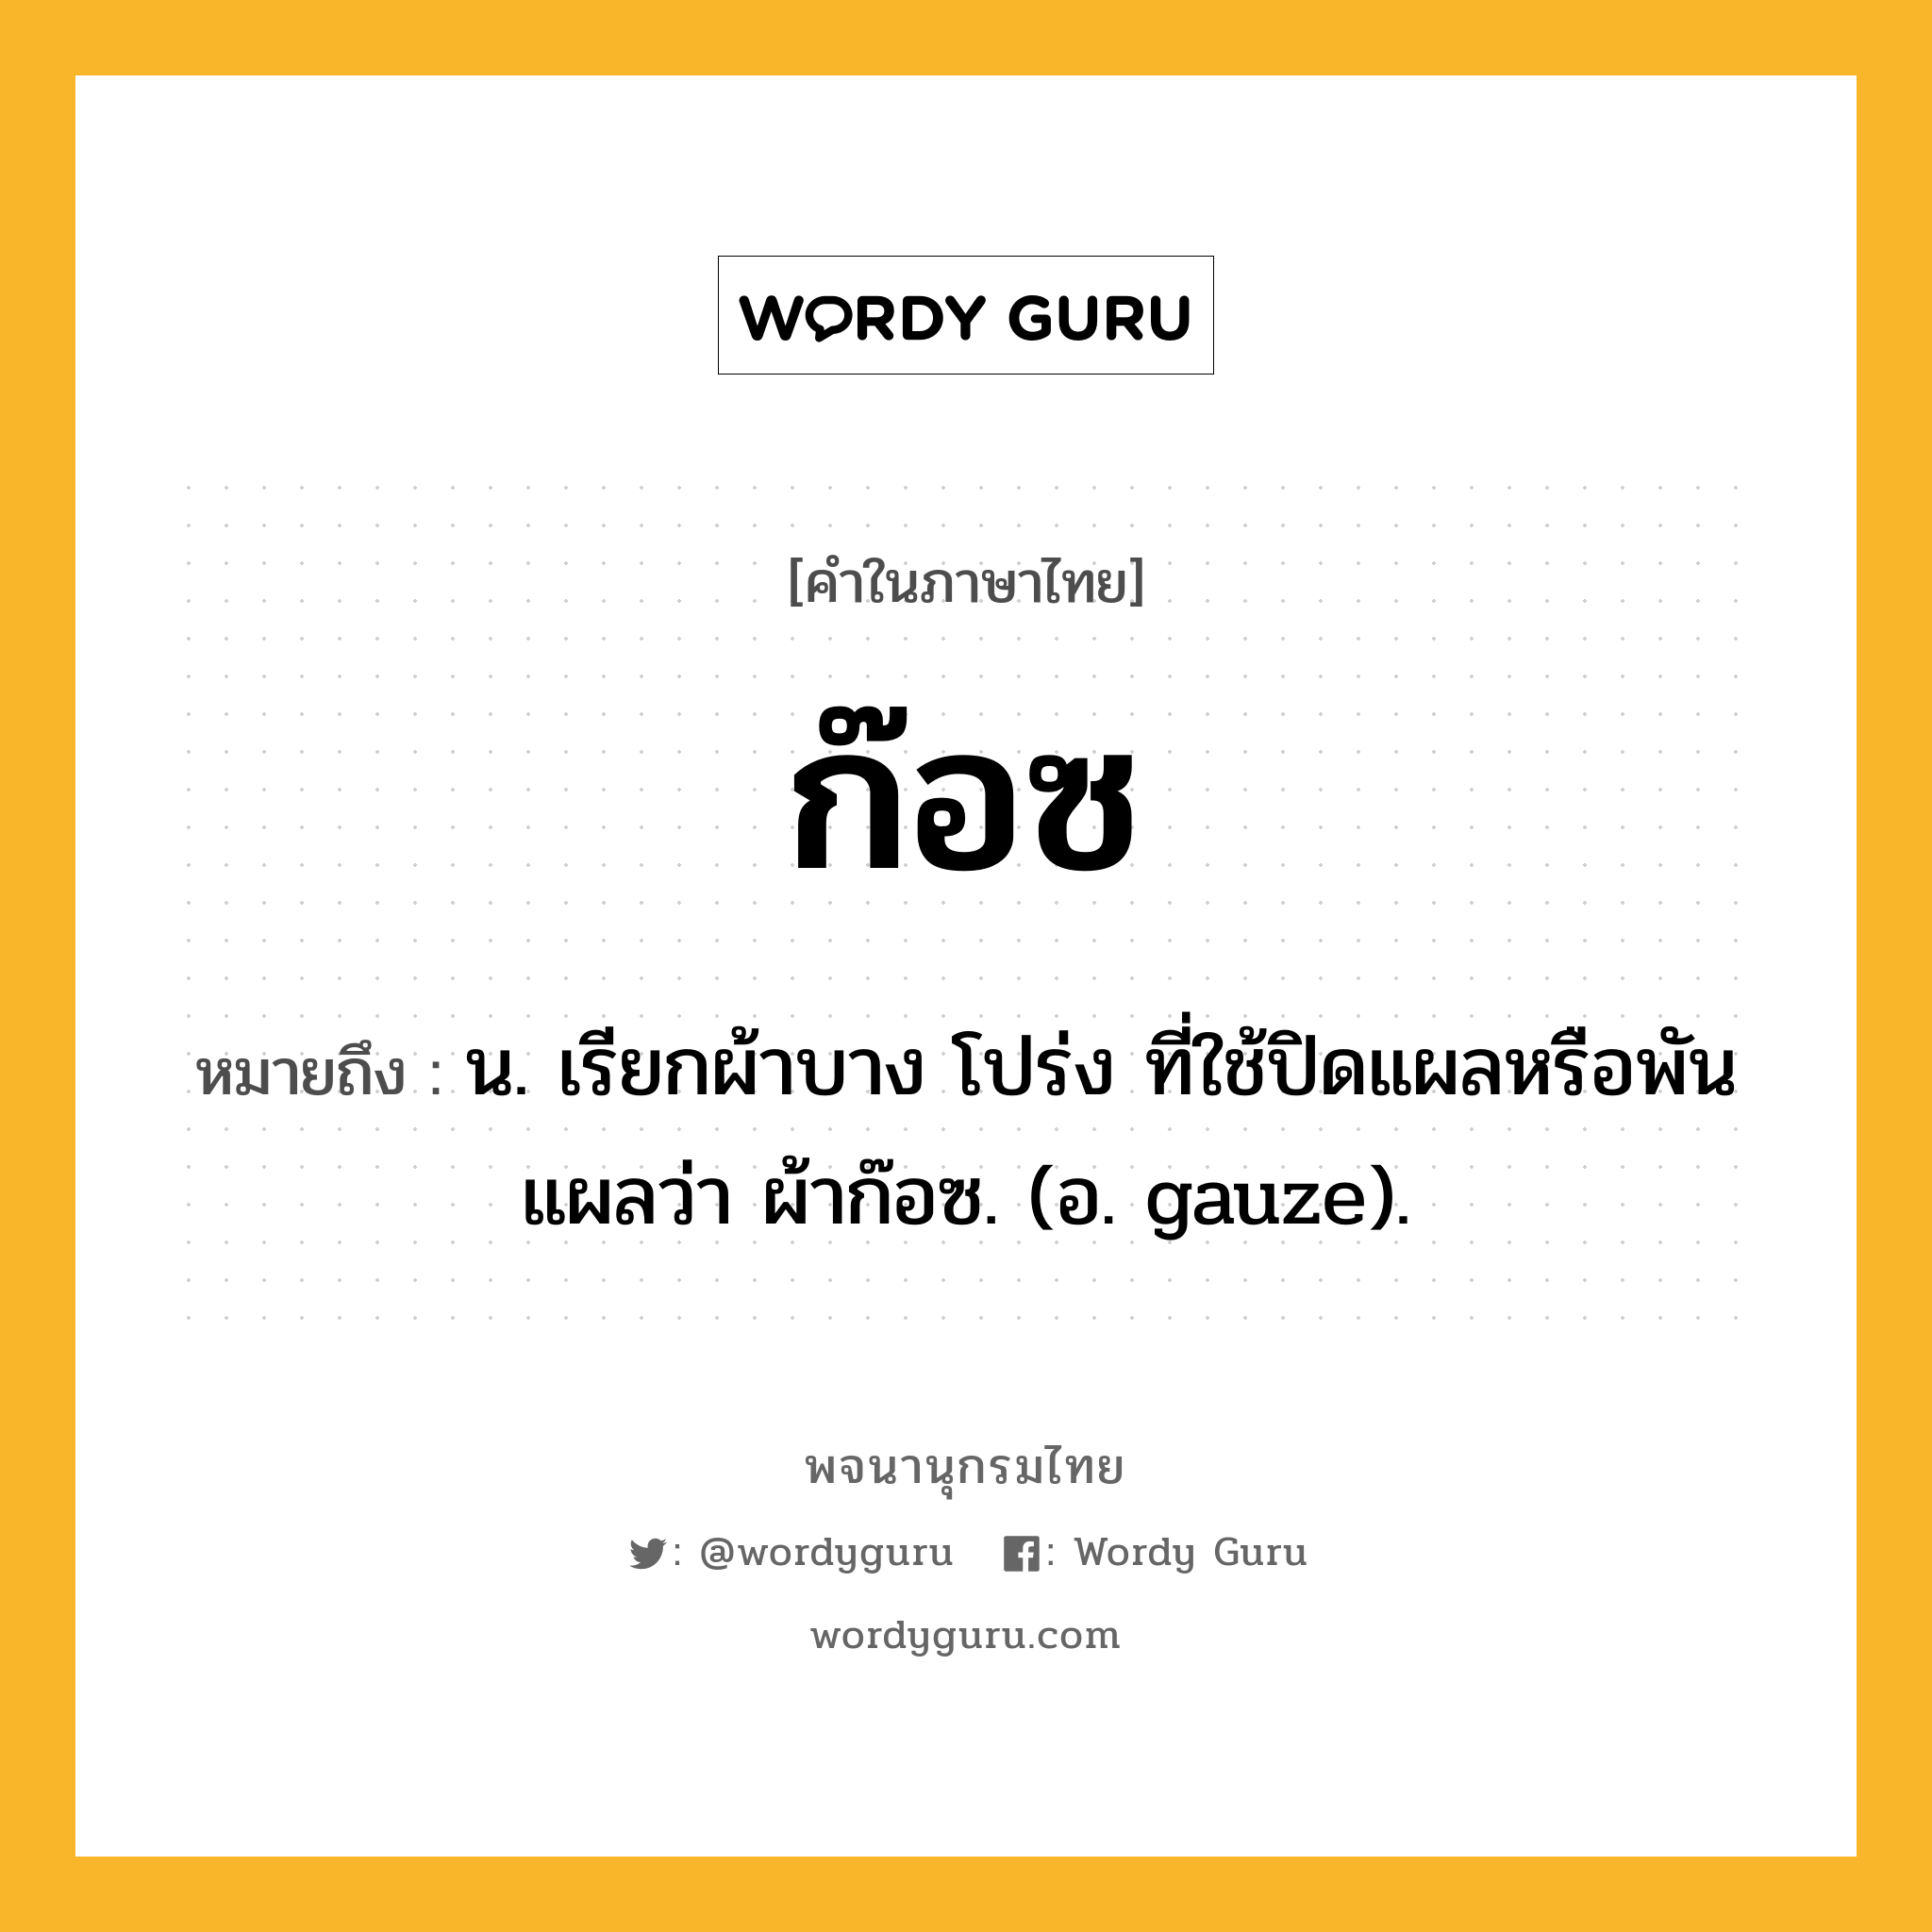 ก๊อซ หมายถึงอะไร?, คำในภาษาไทย ก๊อซ หมายถึง น. เรียกผ้าบาง โปร่ง ที่ใช้ปิดแผลหรือพันแผลว่า ผ้าก๊อซ. (อ. gauze).